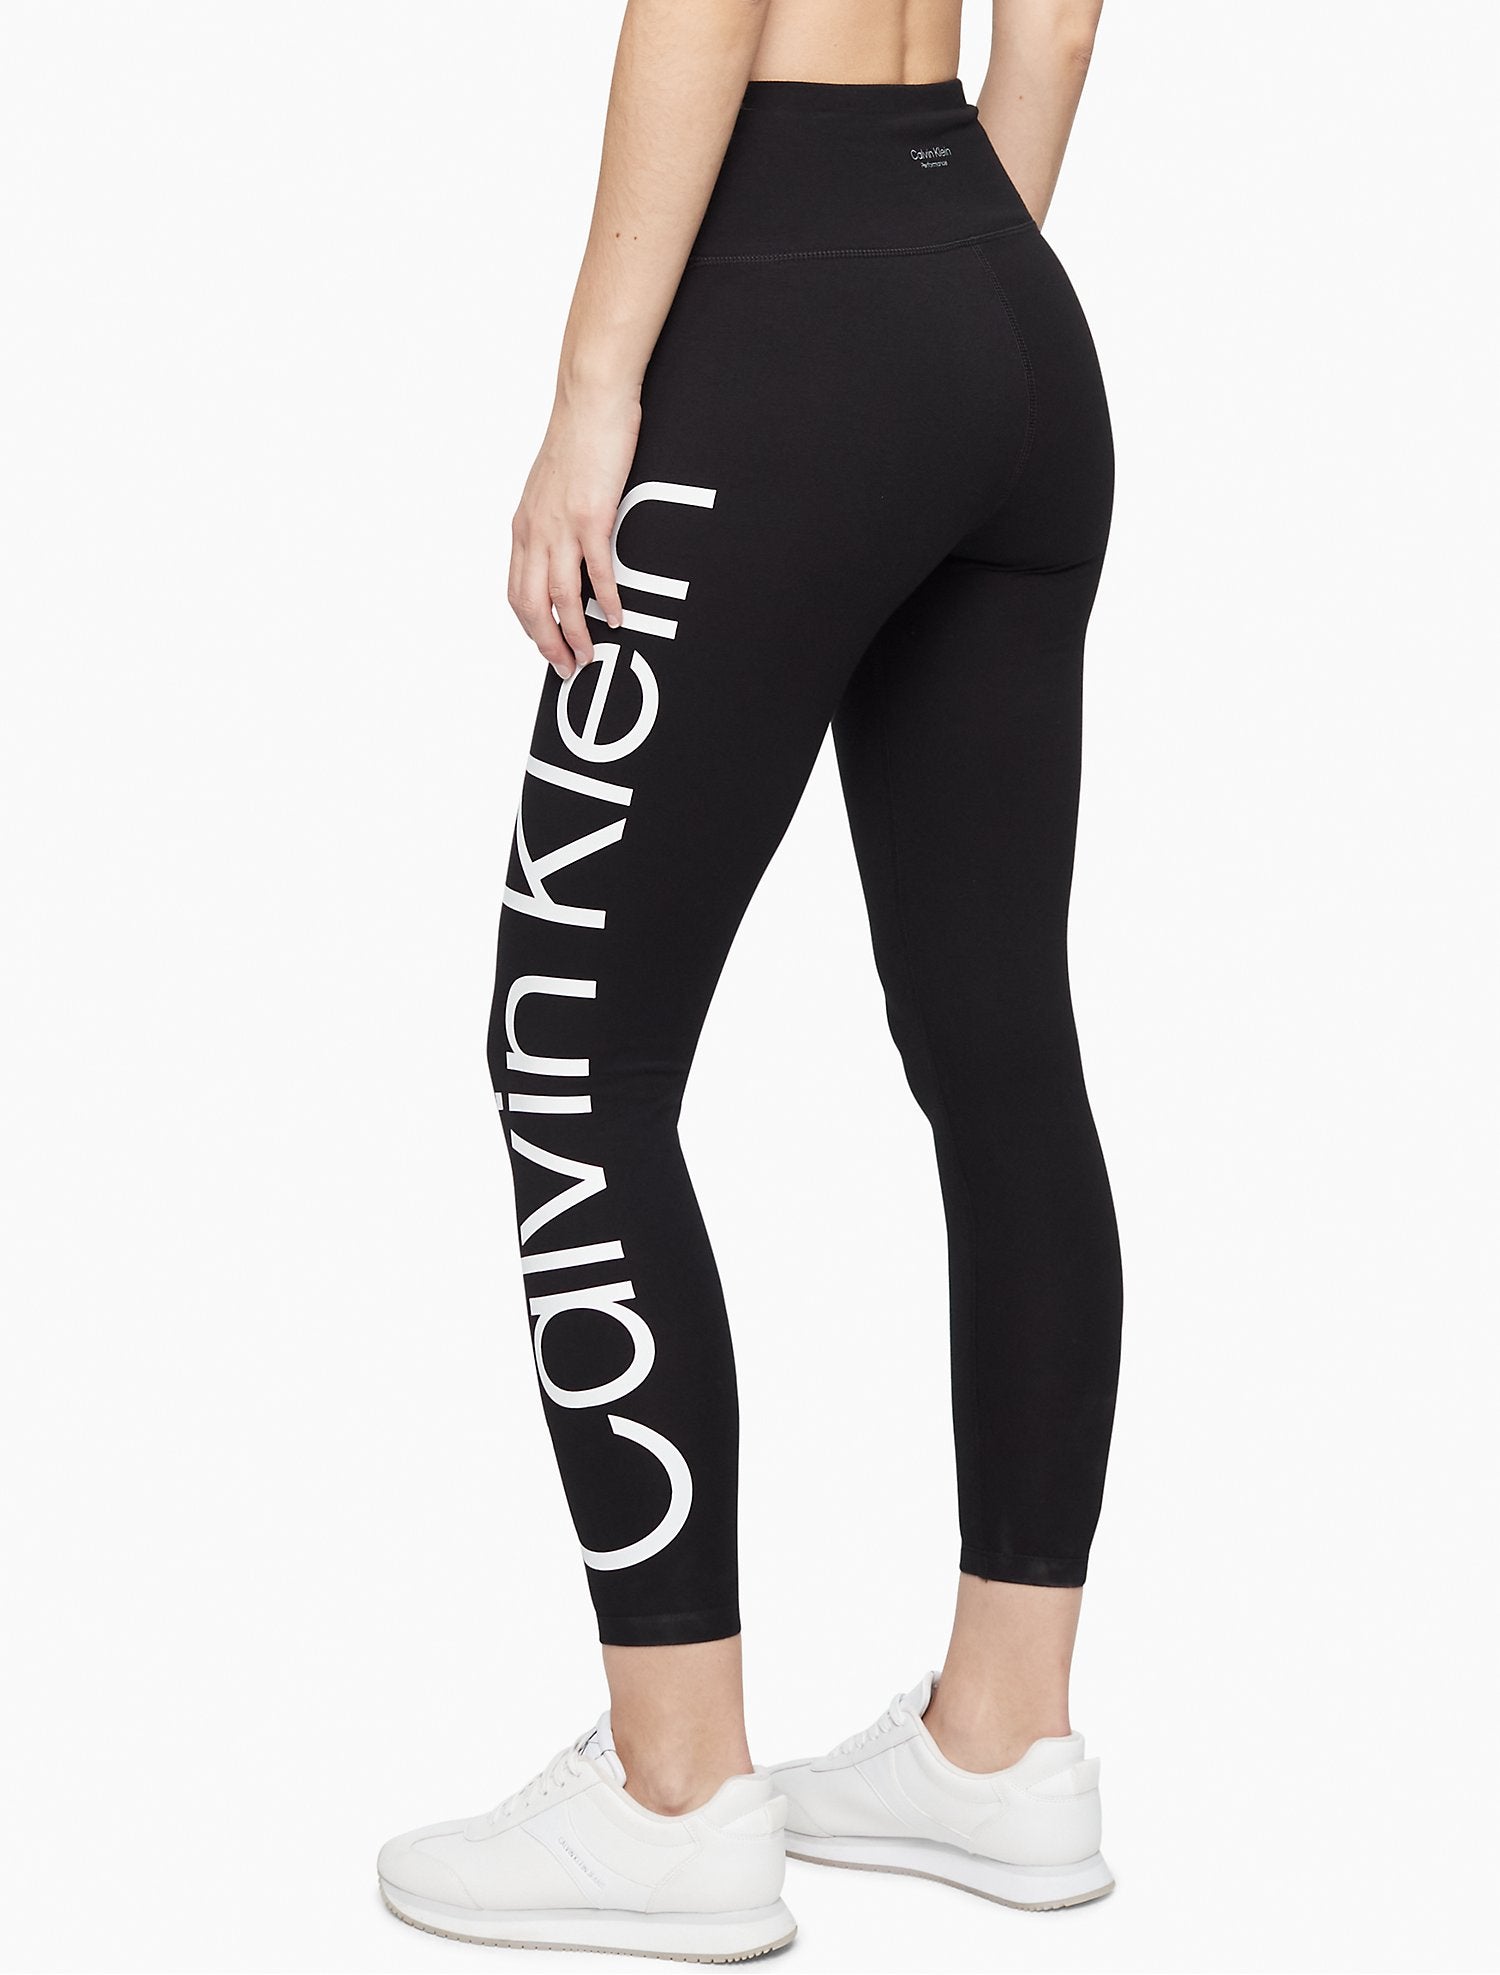 Calvin Klein Performance Tri-Blend Jumbo Logo 7/8 Leggings - Women